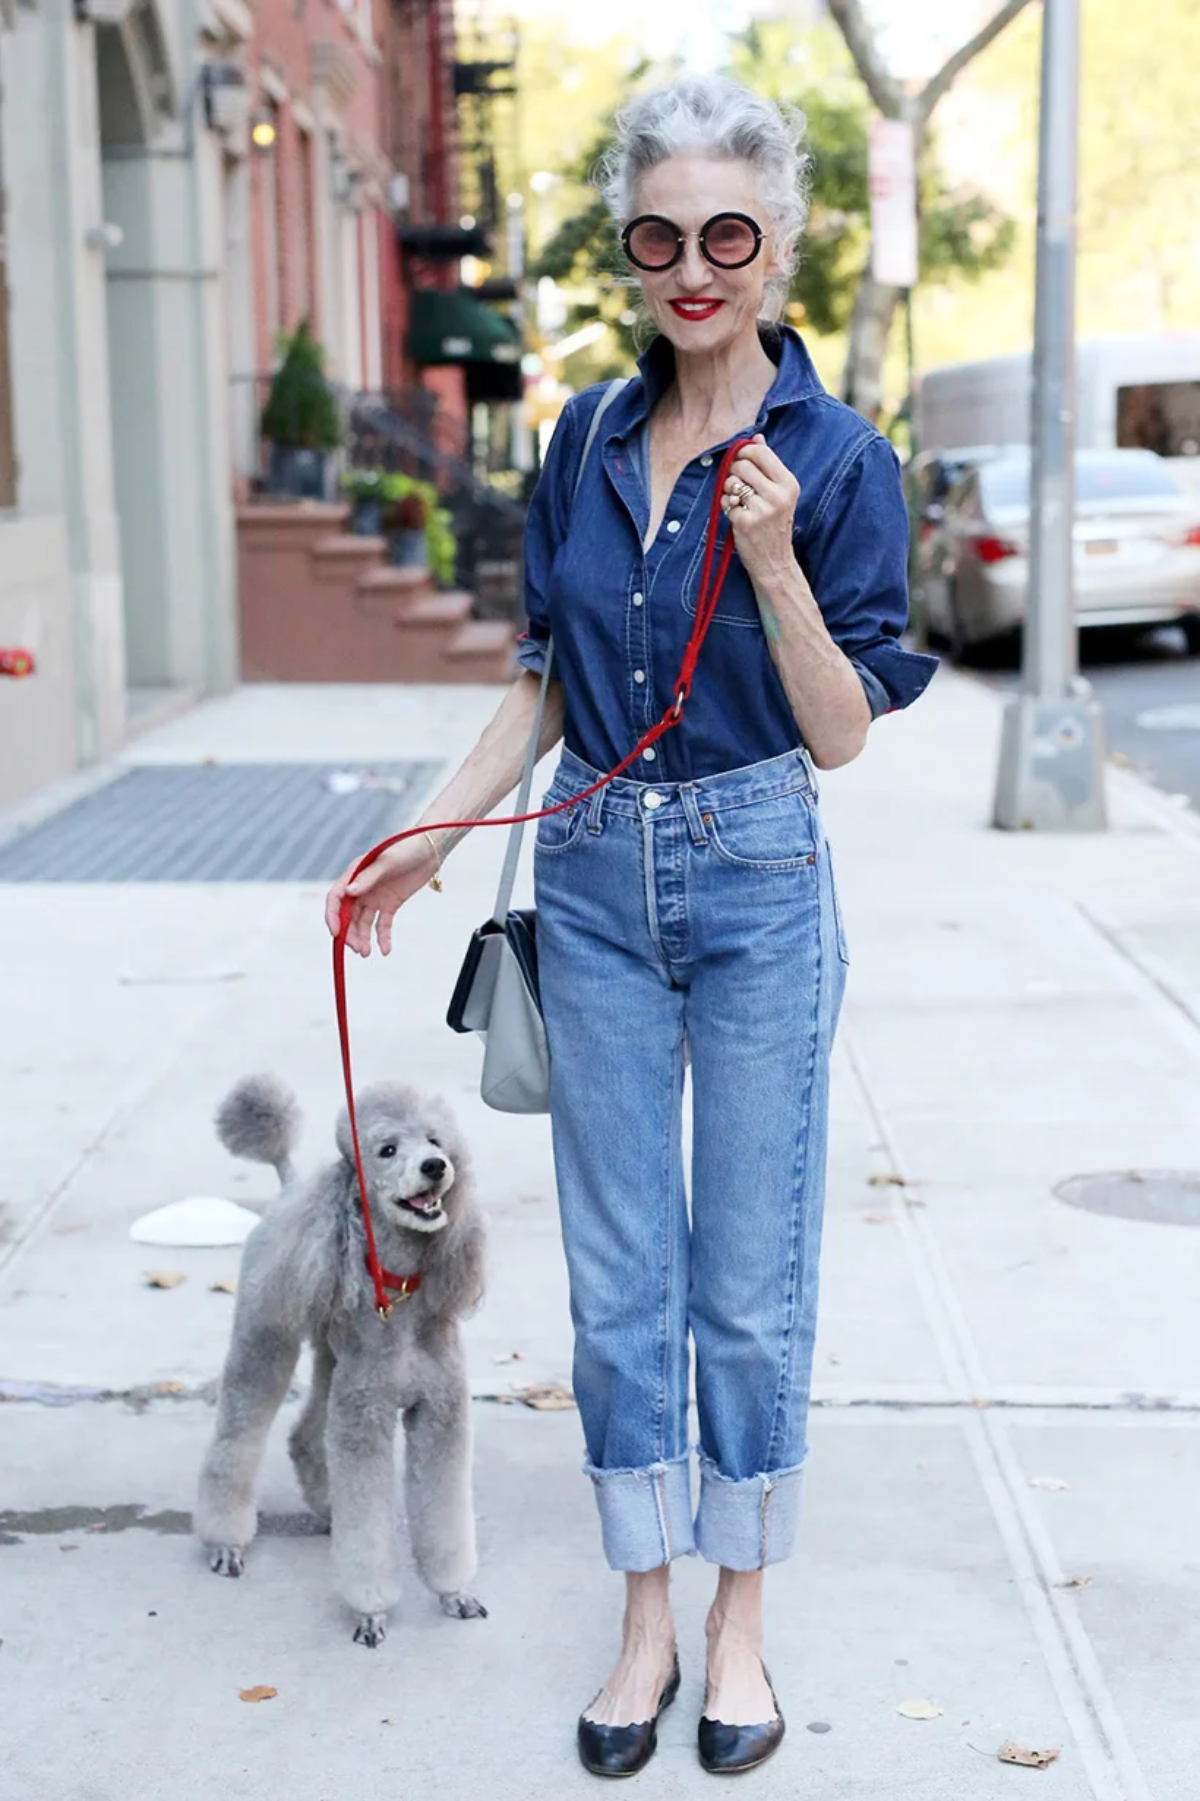 stilvolle dame über 60 in jeans hemd und schwarzen schuhen geht mit grauem pudelhund spazieren